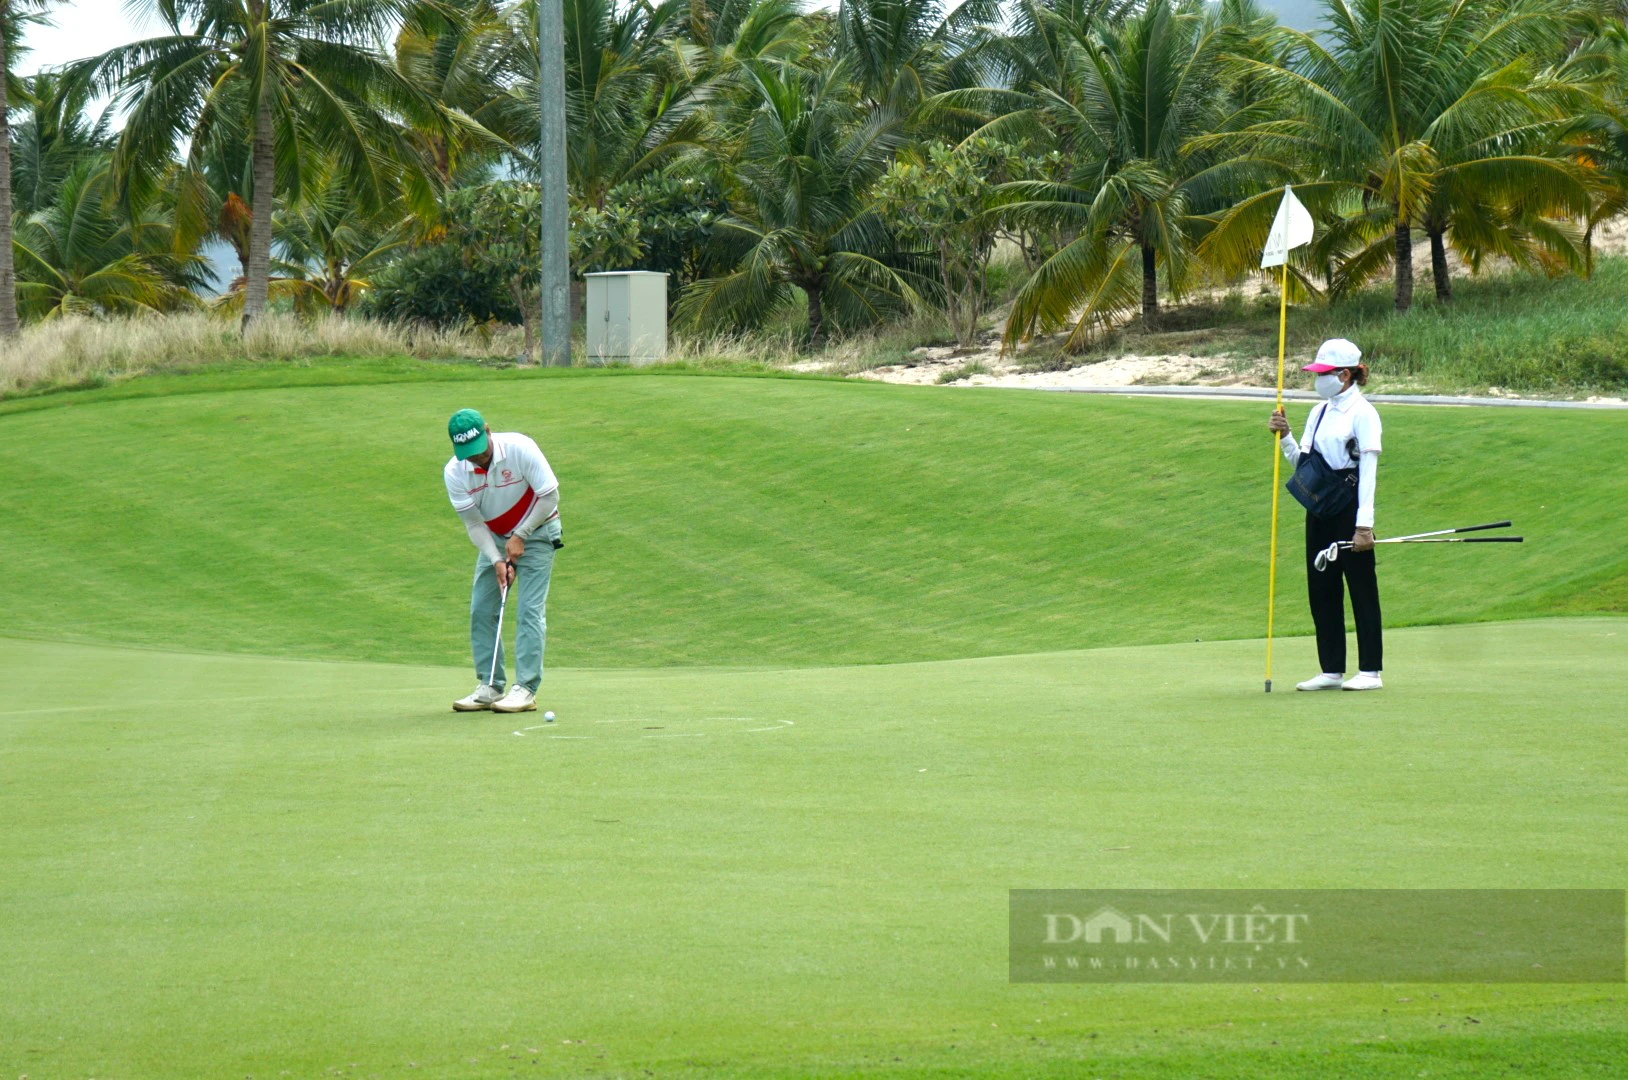 Gần 160 golfer tranh tàì ở giải golf Ninh Thuận - Bình Thuận mở rộng - Ảnh 3.